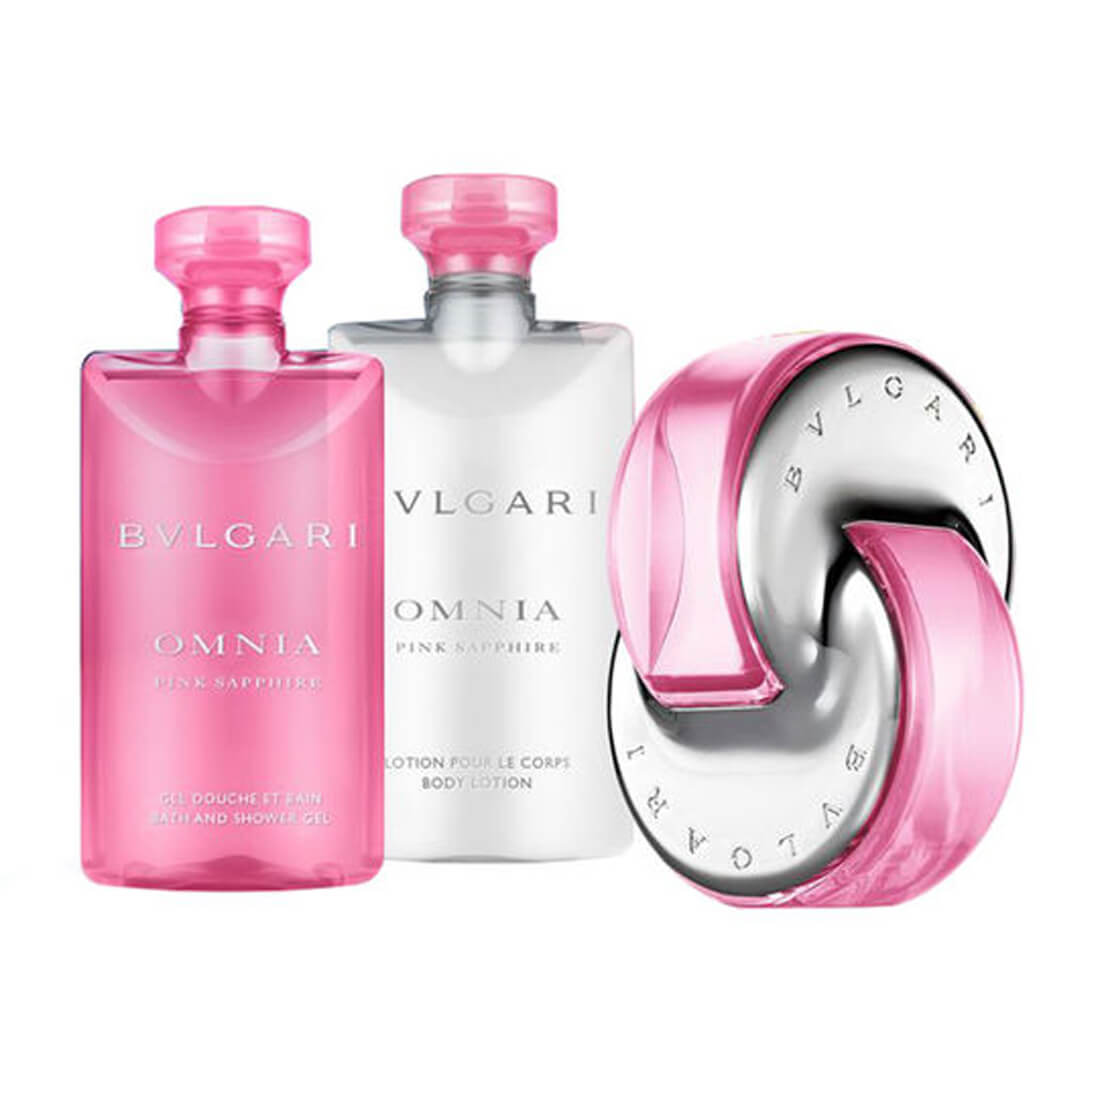 bvlgari perfume and lotion set